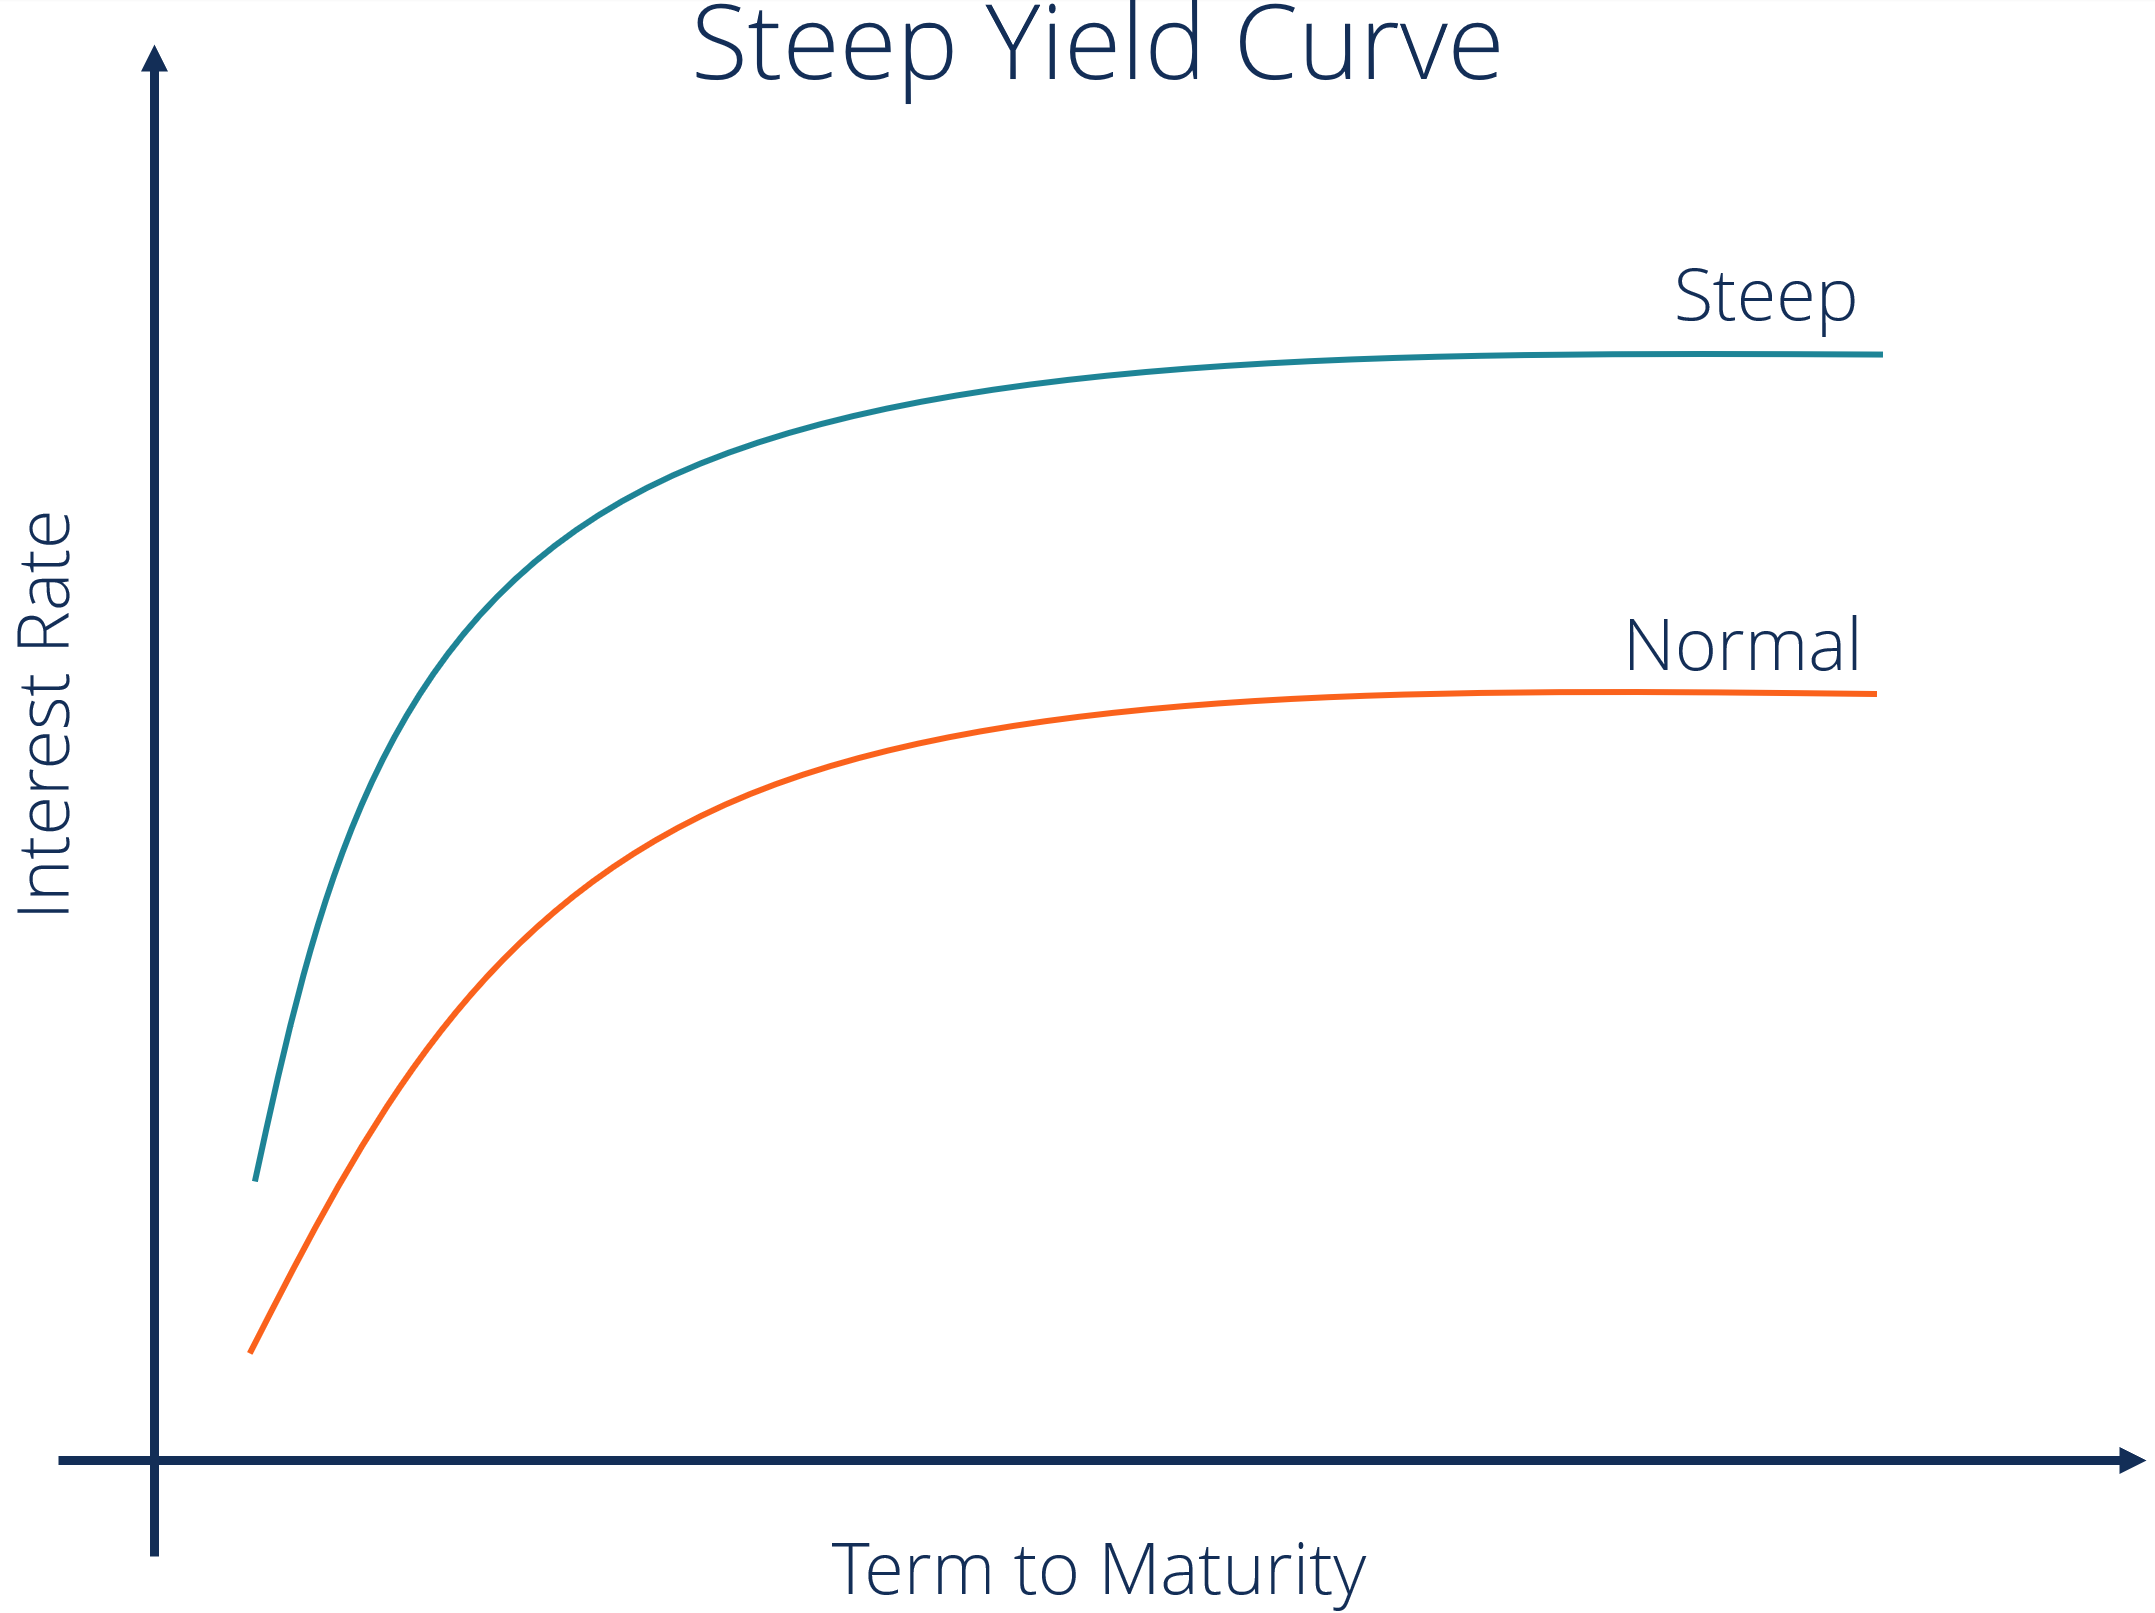 Steep Yield Curve